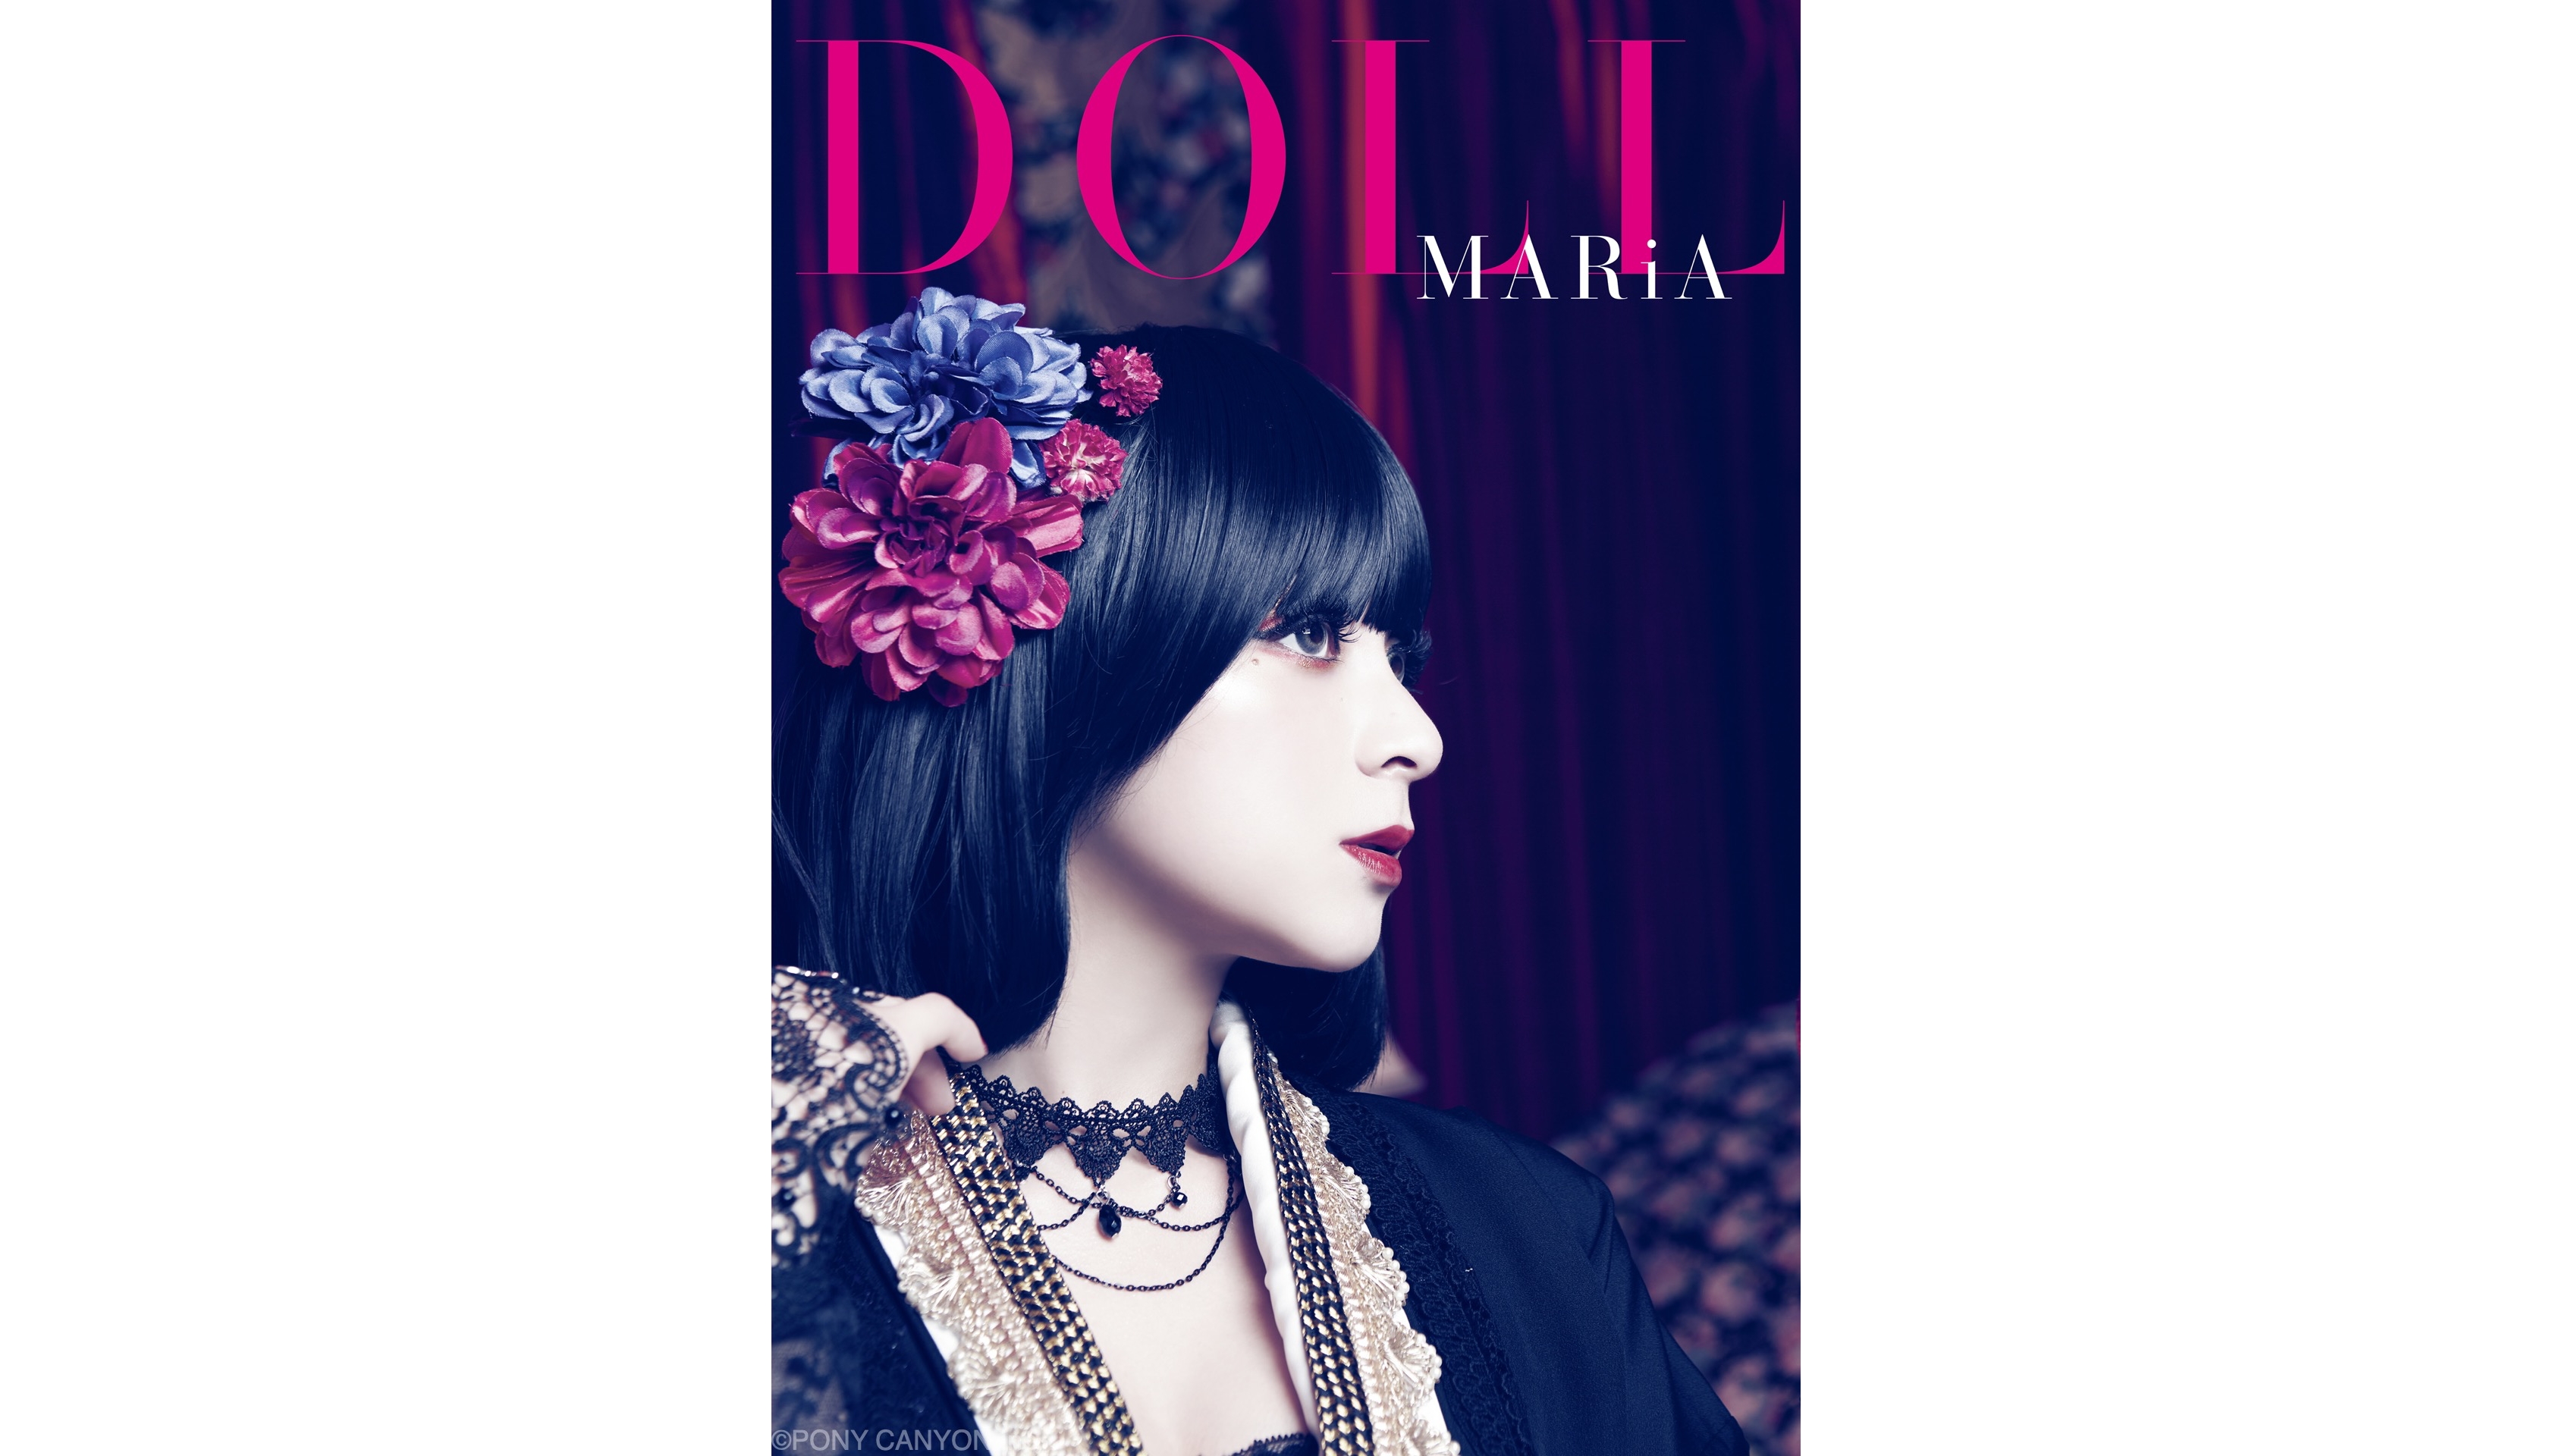 maria-doll_h1_m_s